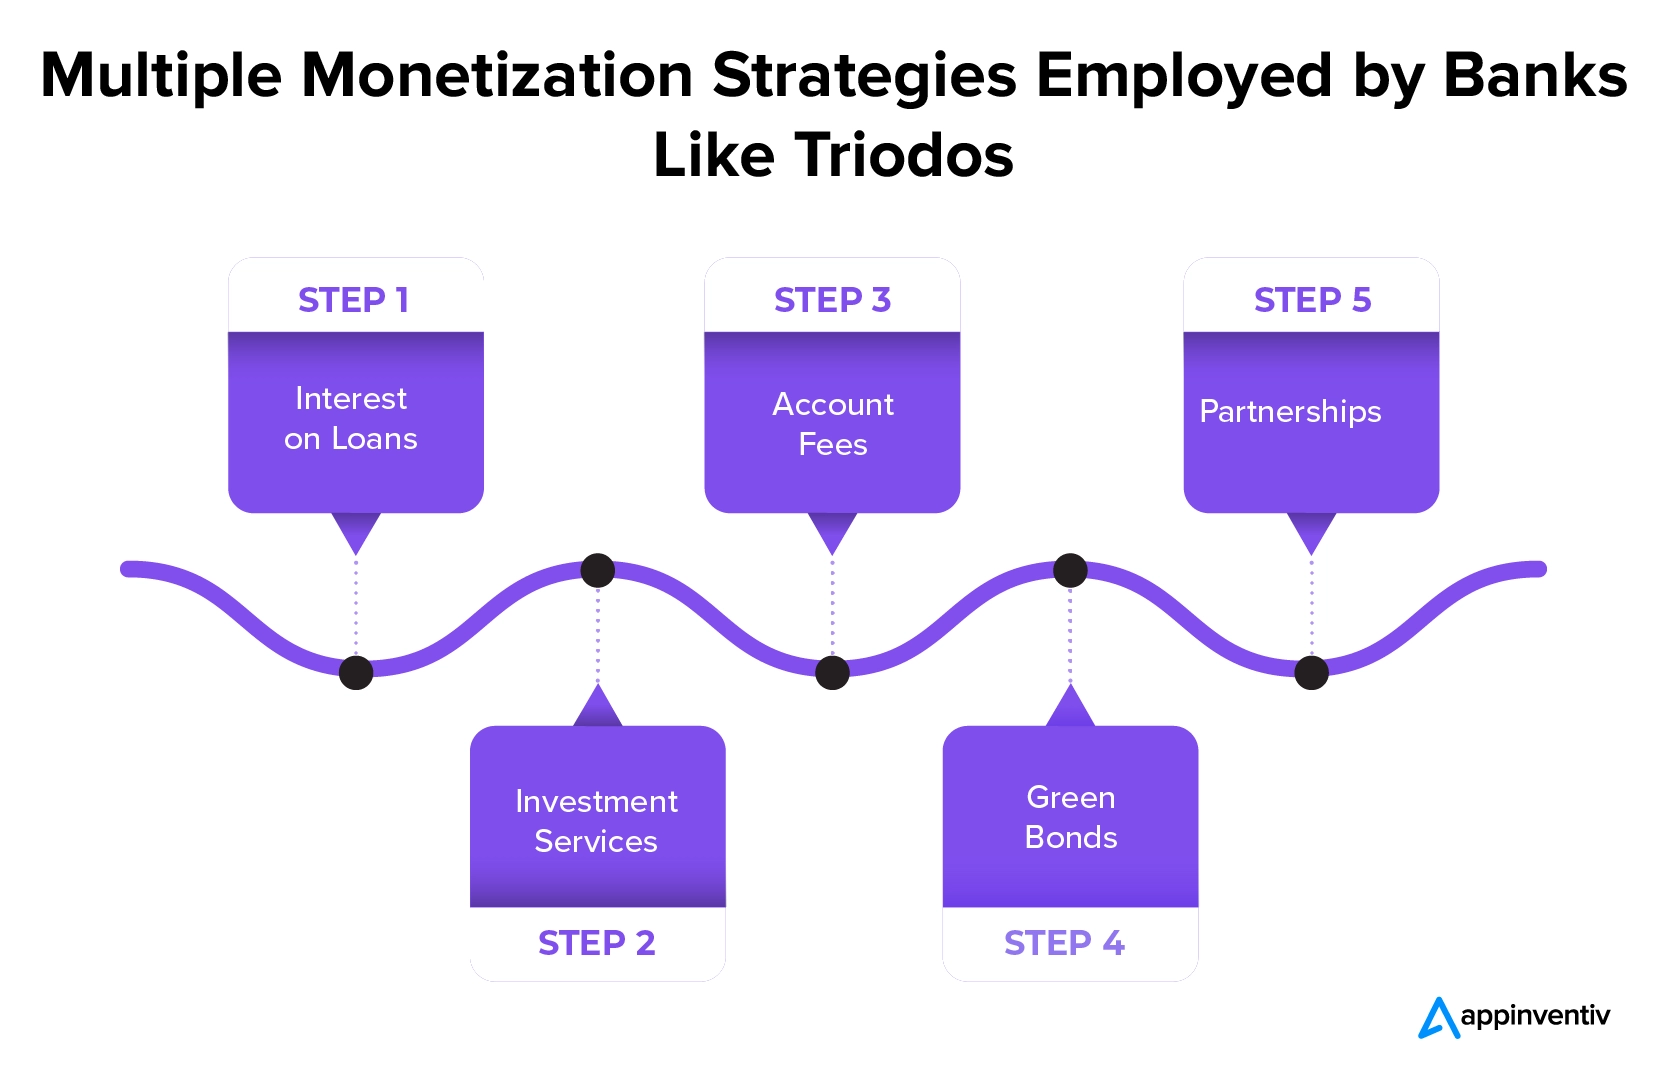 Triodos 等银行采用的多种货币化策略